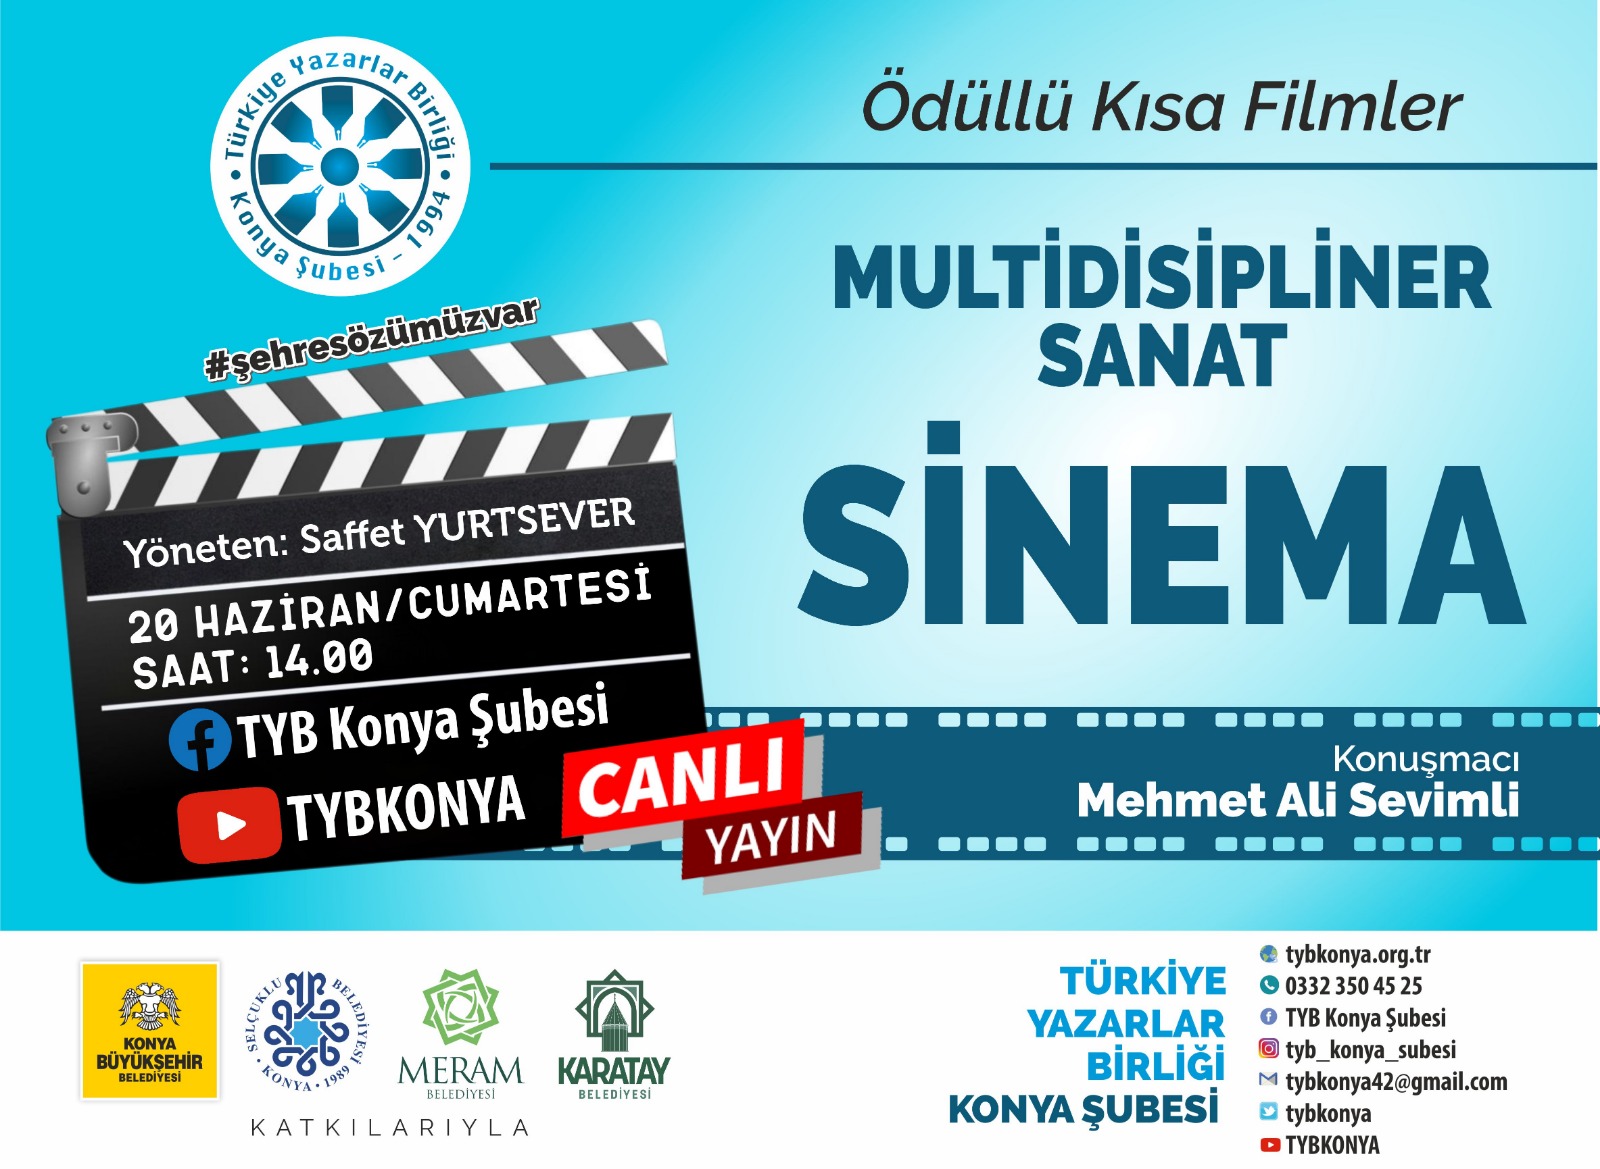 Ödüllü Kısa Filmler MULTİDİSİPLİNER SANAT SİNEMA